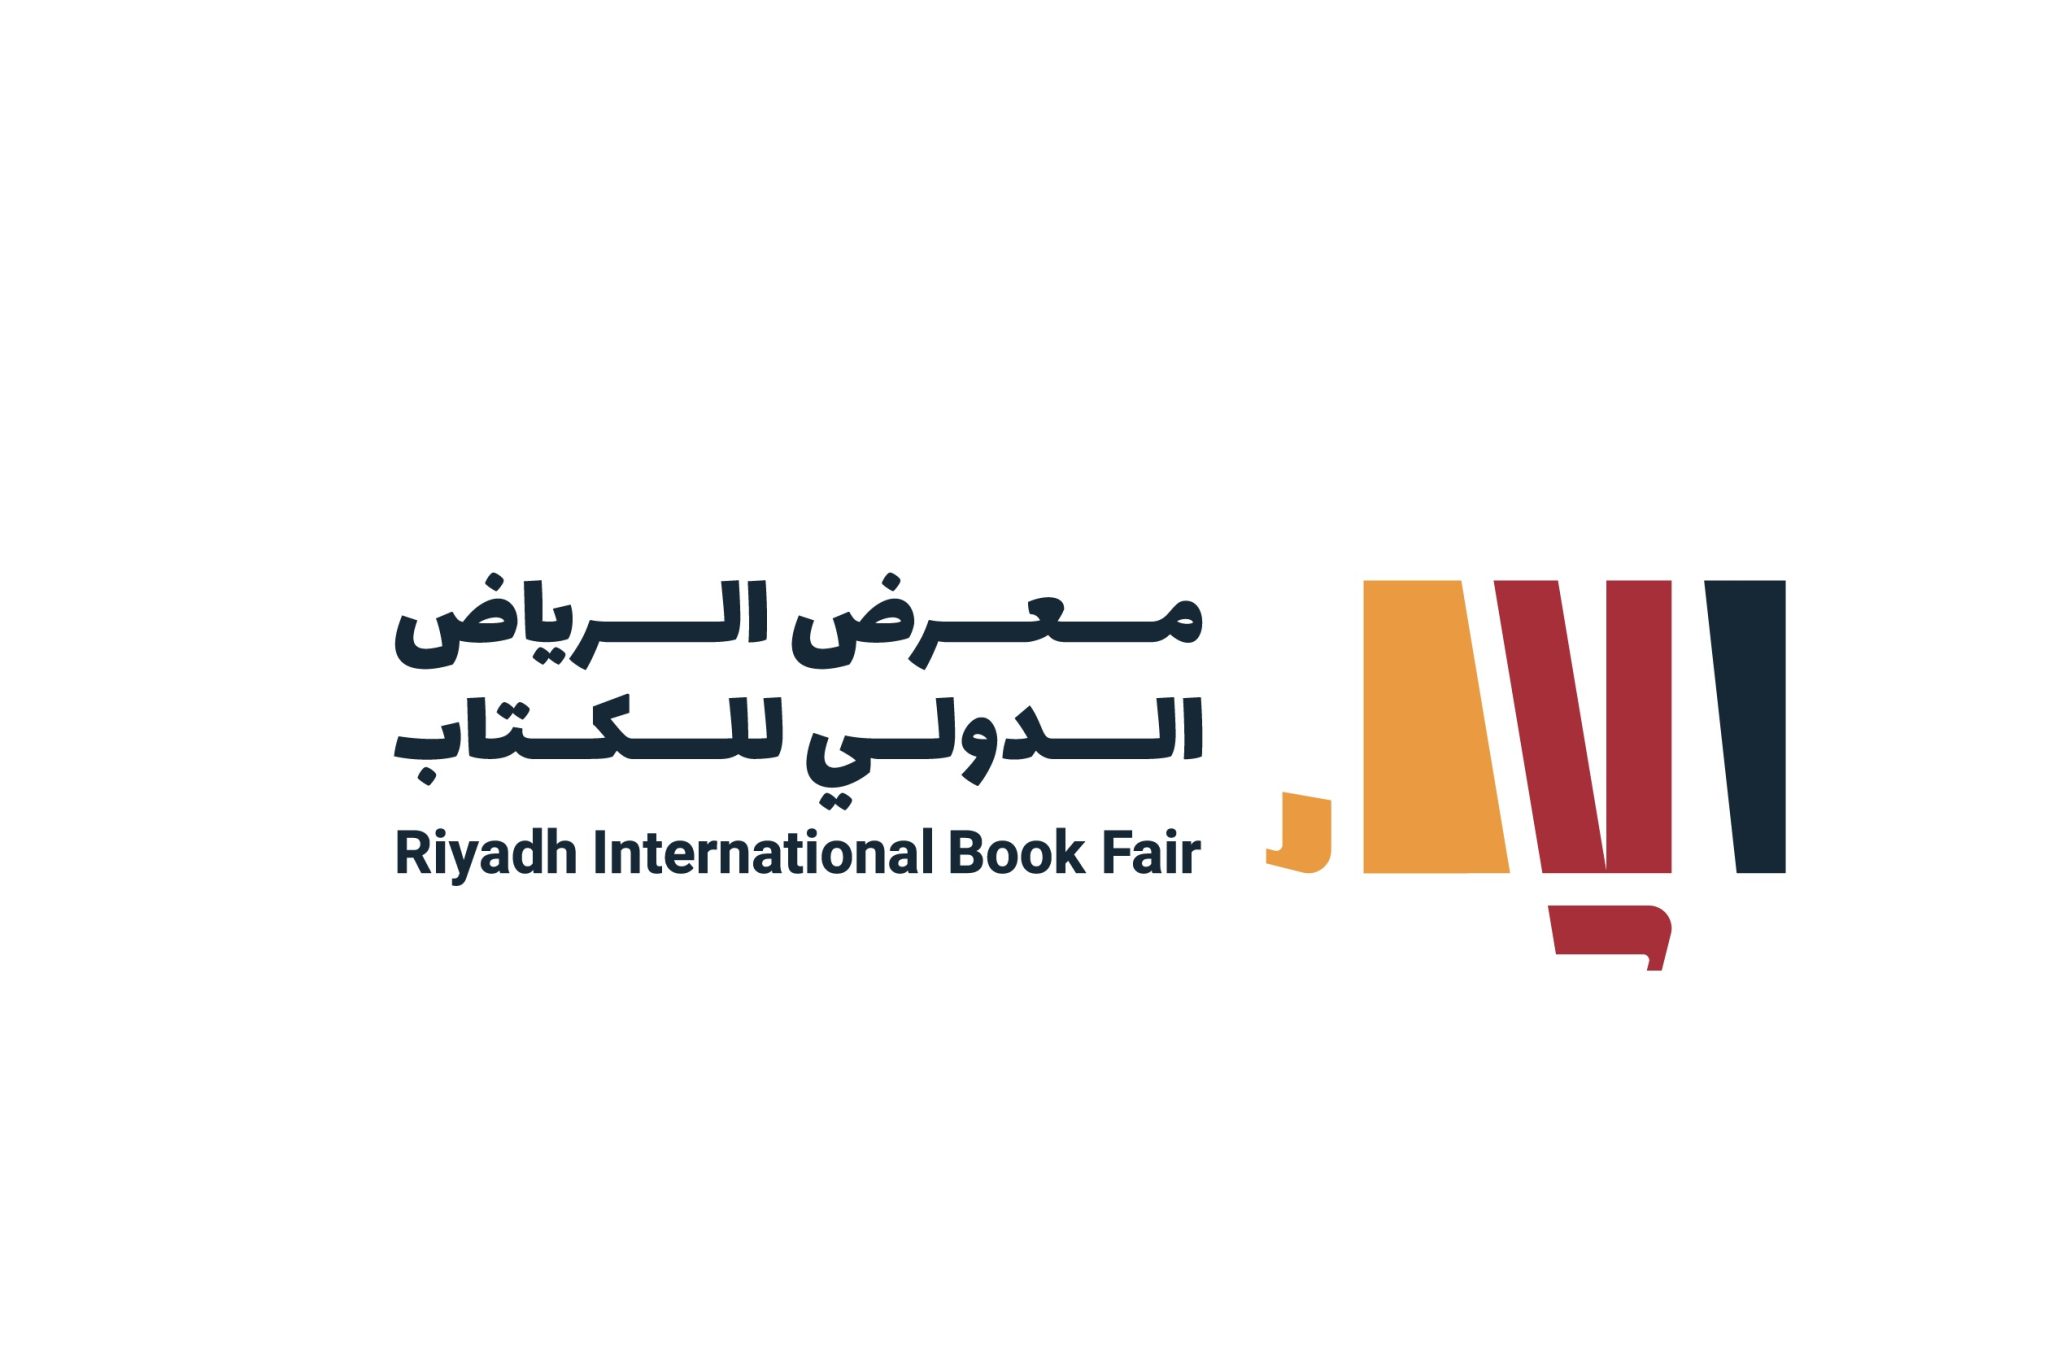 «تريندز» يرفد «الرياض الدولي للكتاب» بمجموعة متنوعة من إصداراته البحثية